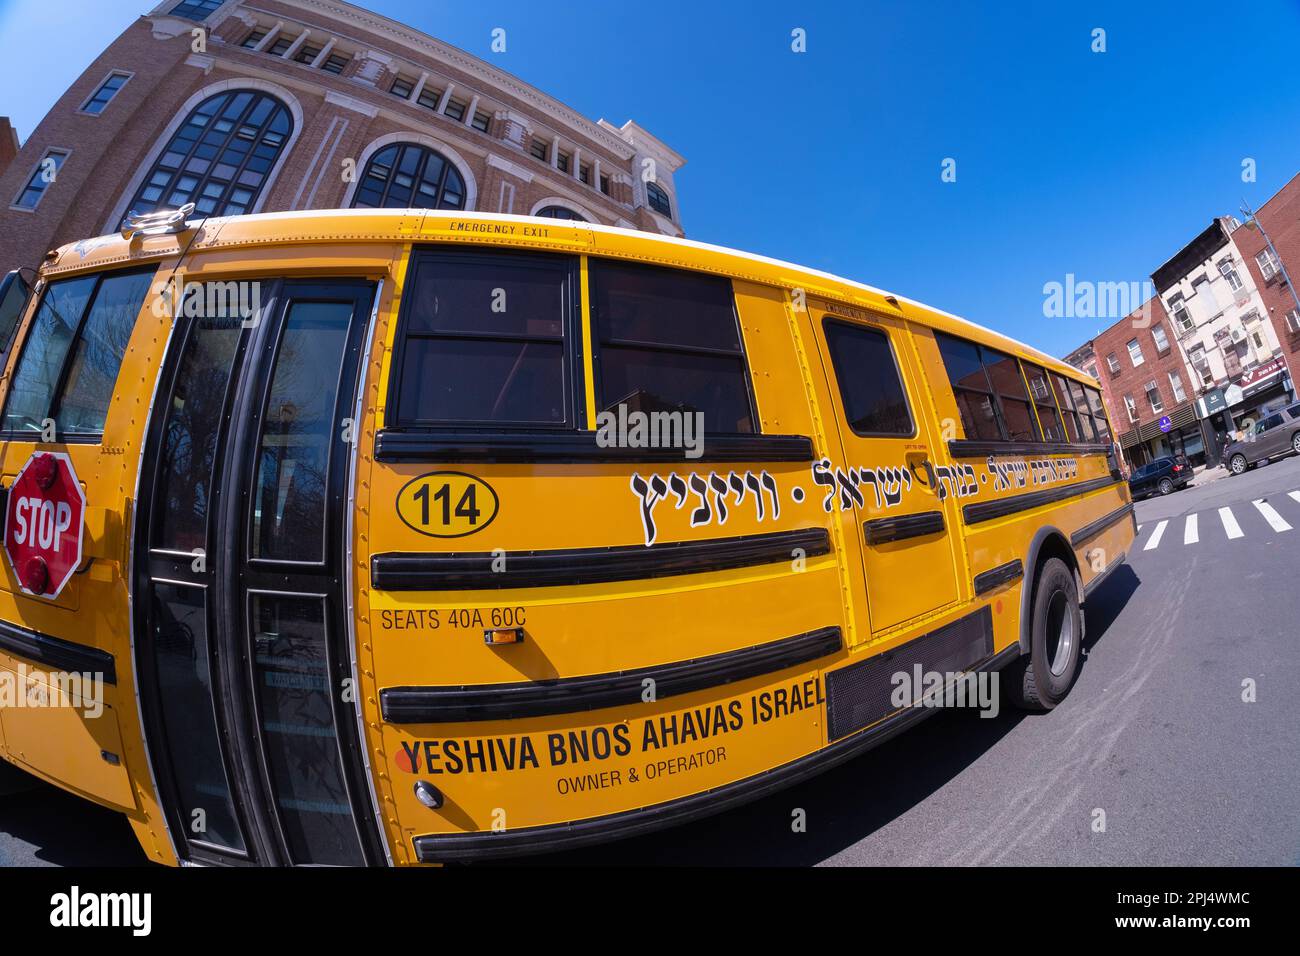 Fischaugenlinsen-Blick auf einen Vizhnitz-Schulbus mit jiddischer Schrift und deren Schule im Hintergrund. Vizhnitz ist das Wort ganz links. In Brooklyn, New York. Stockfoto